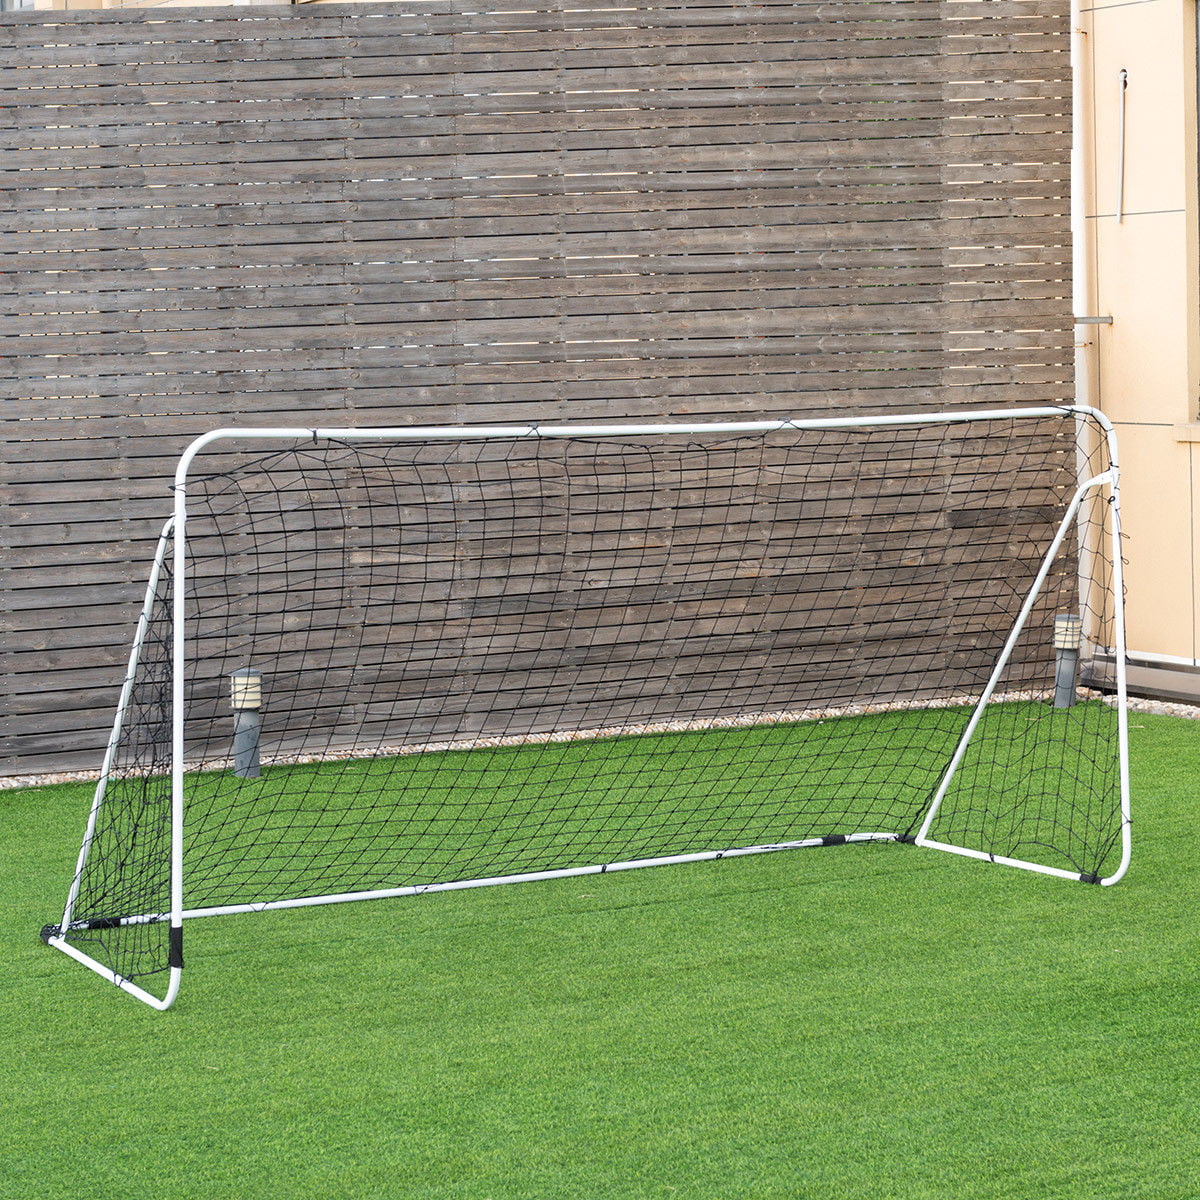 12’ x 6’ Steel Football Soccer Goal Net Gate Backyard Outdoor Sport Weatherproof